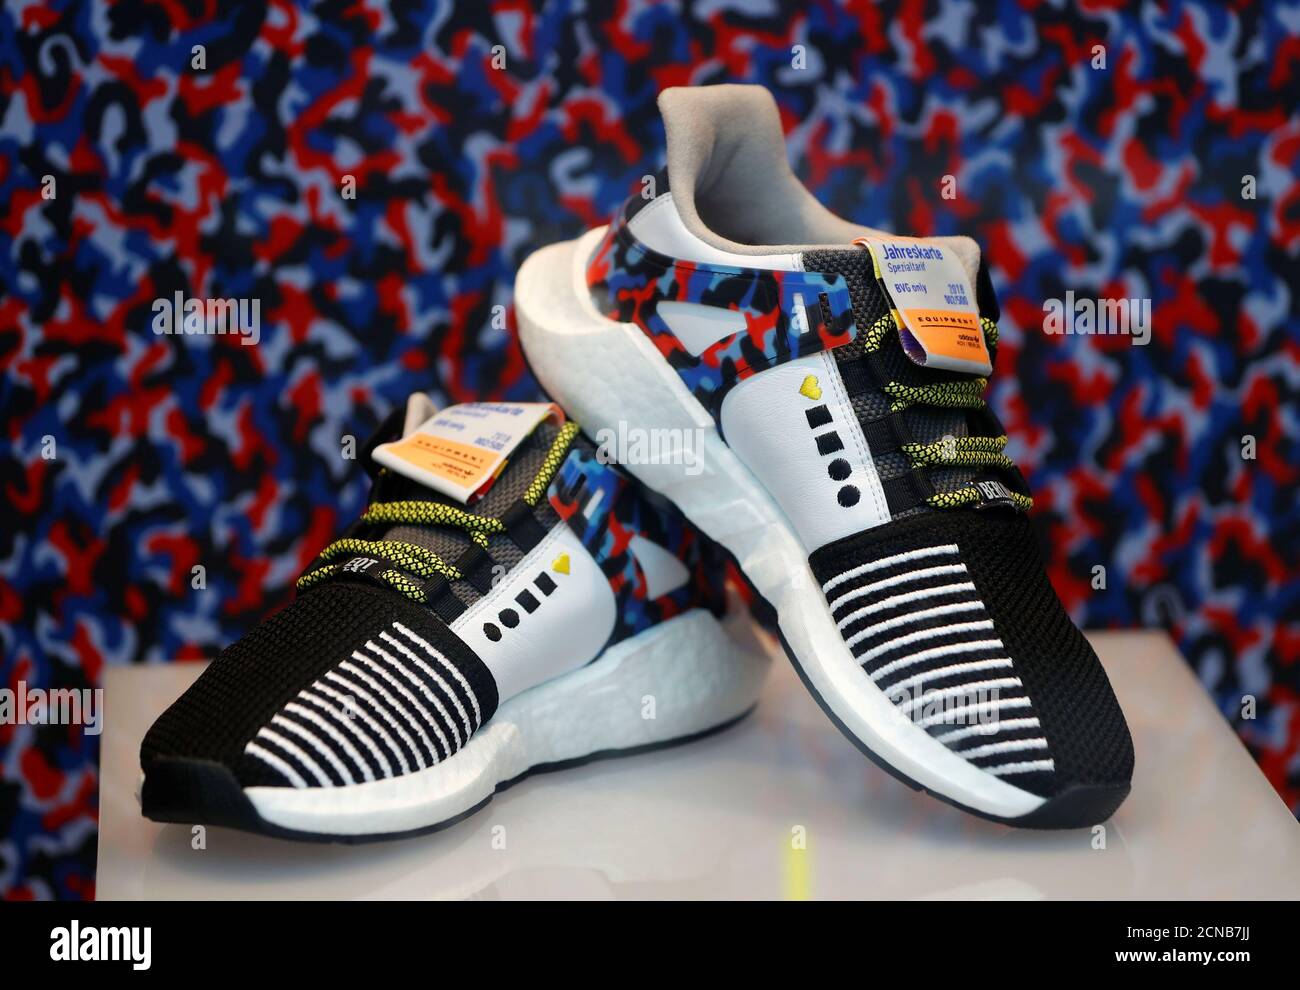 Les sneakers Adidas en édition limitée qui correspondent au modèle de siège  de métro de Berlin et qui incluent un pass annuel sont exposées au magasin  de chaussures Overkill à Berlin, en